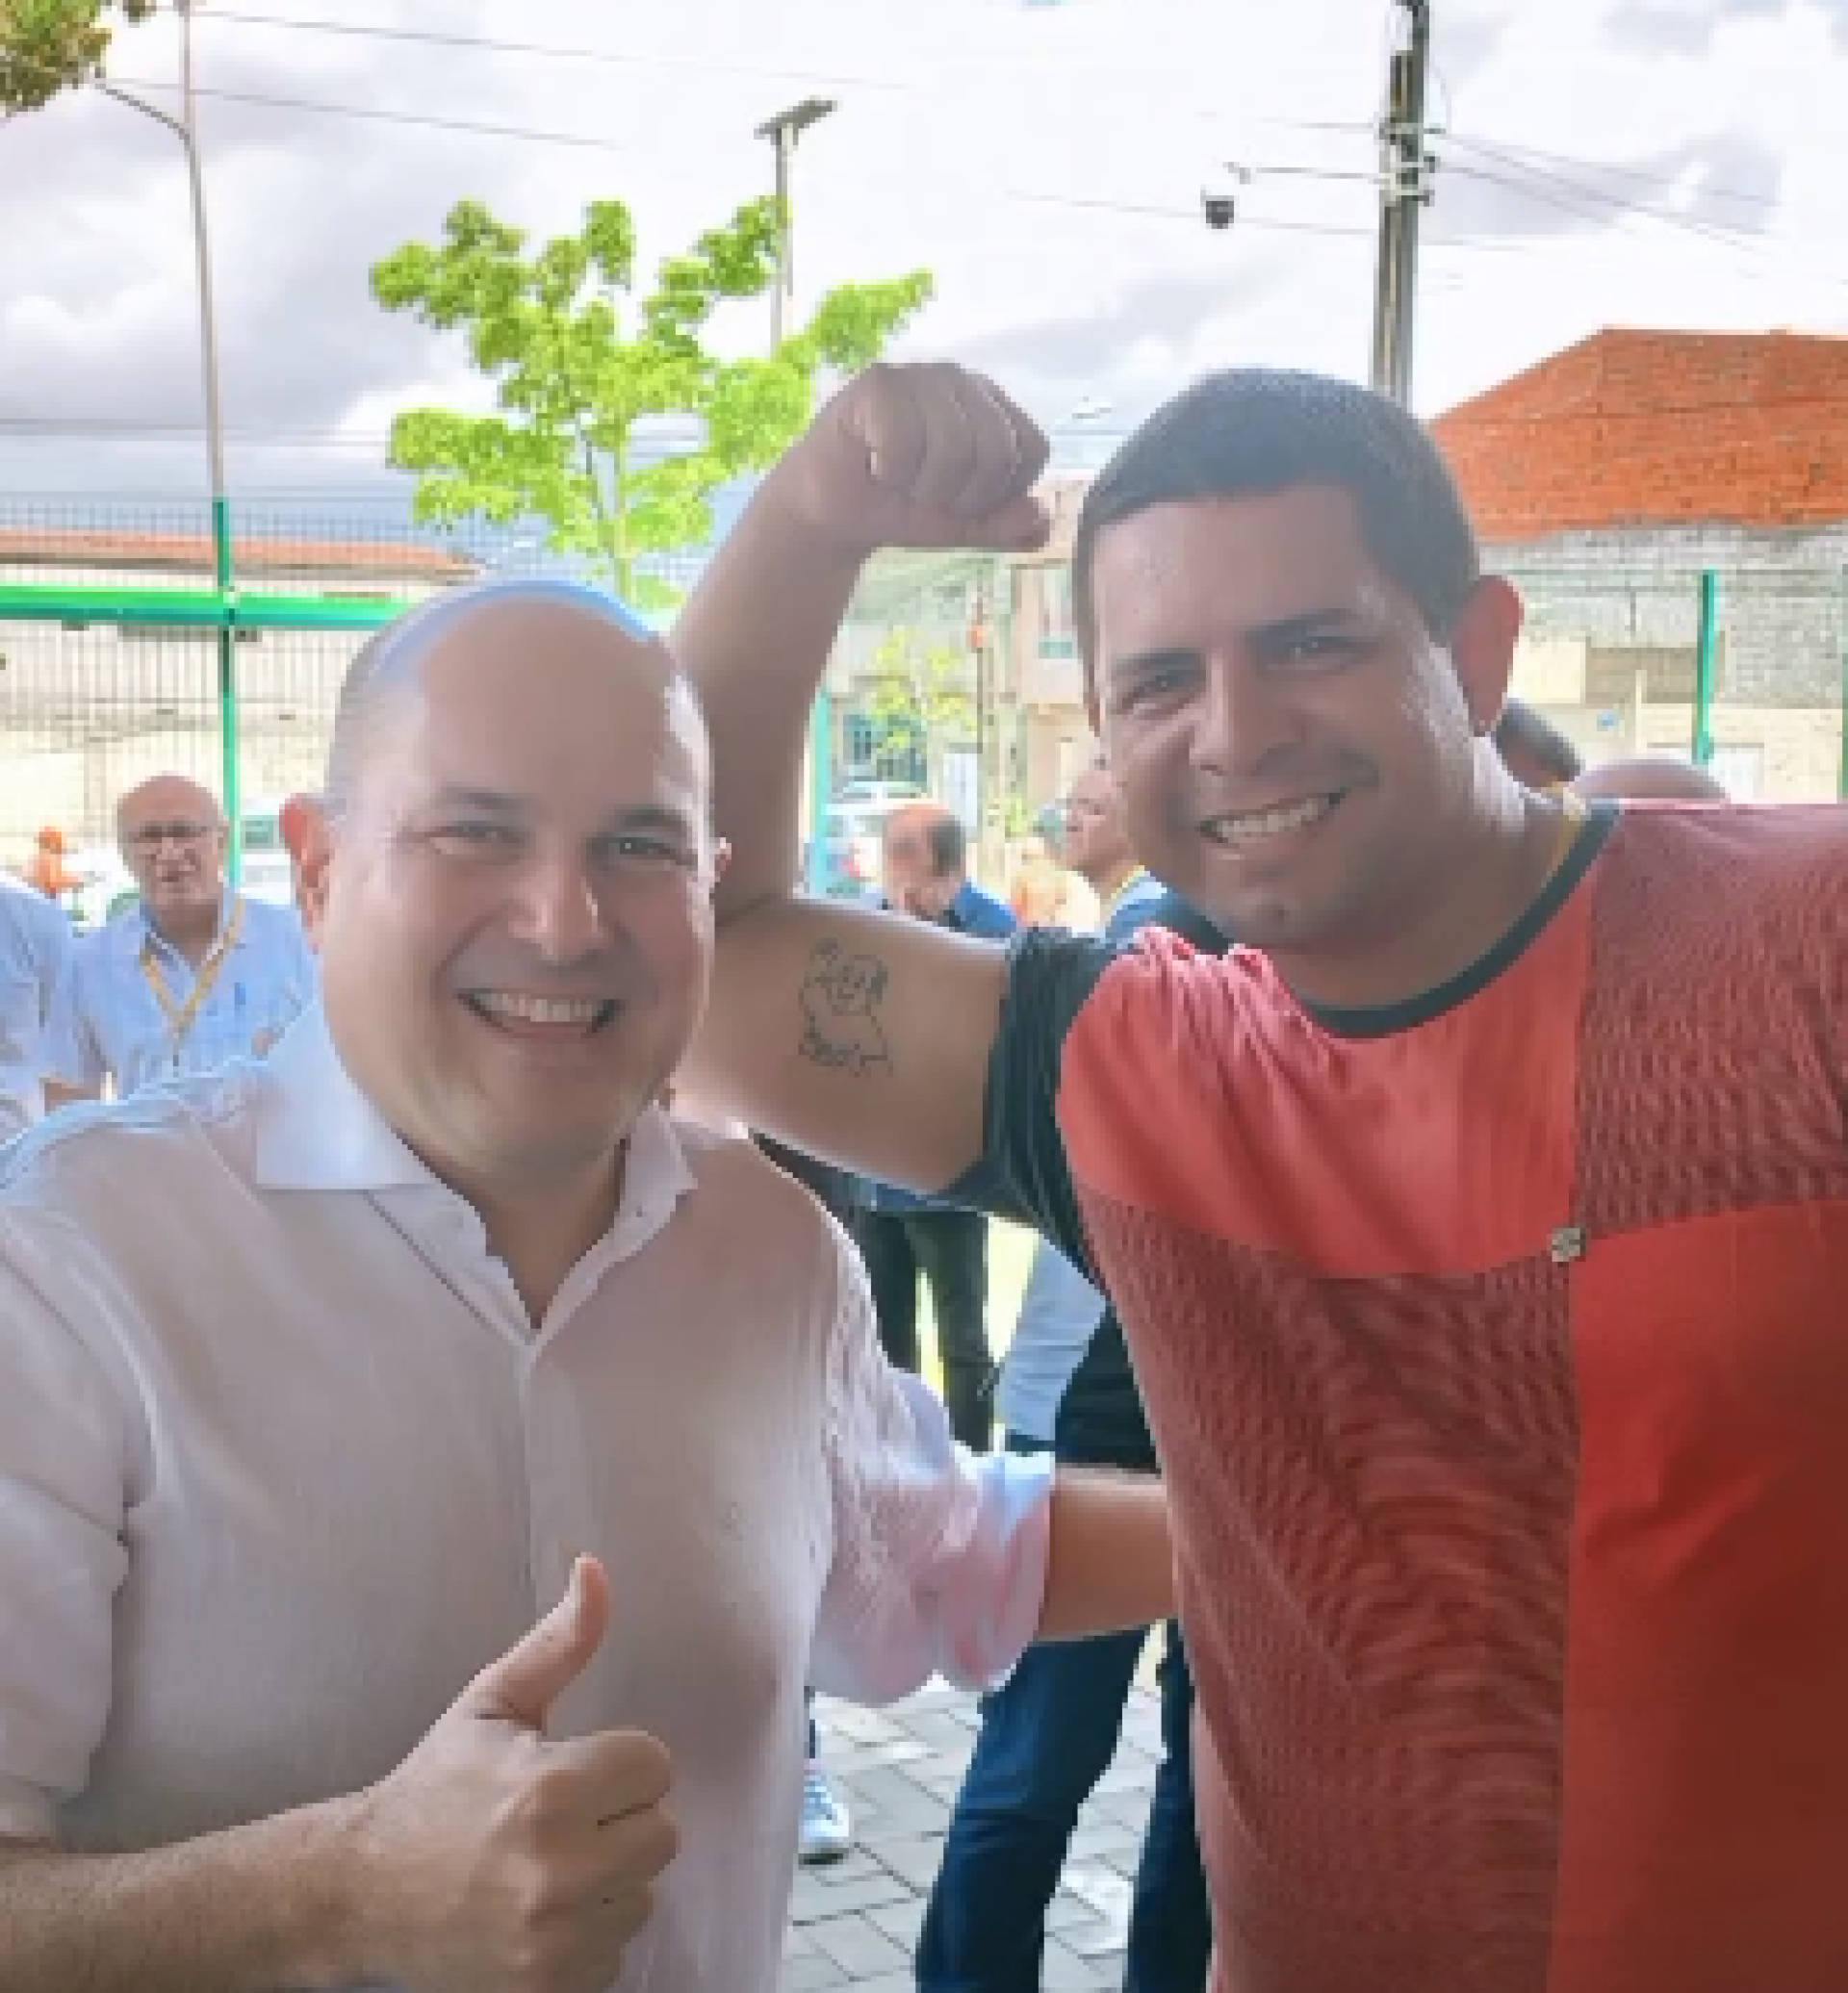 Agente de cidadania divulgou imagem do ex-prefeito com a tatuagem nas redes sociais (Foto: Reprodução/Instagram Rogers Moreira)